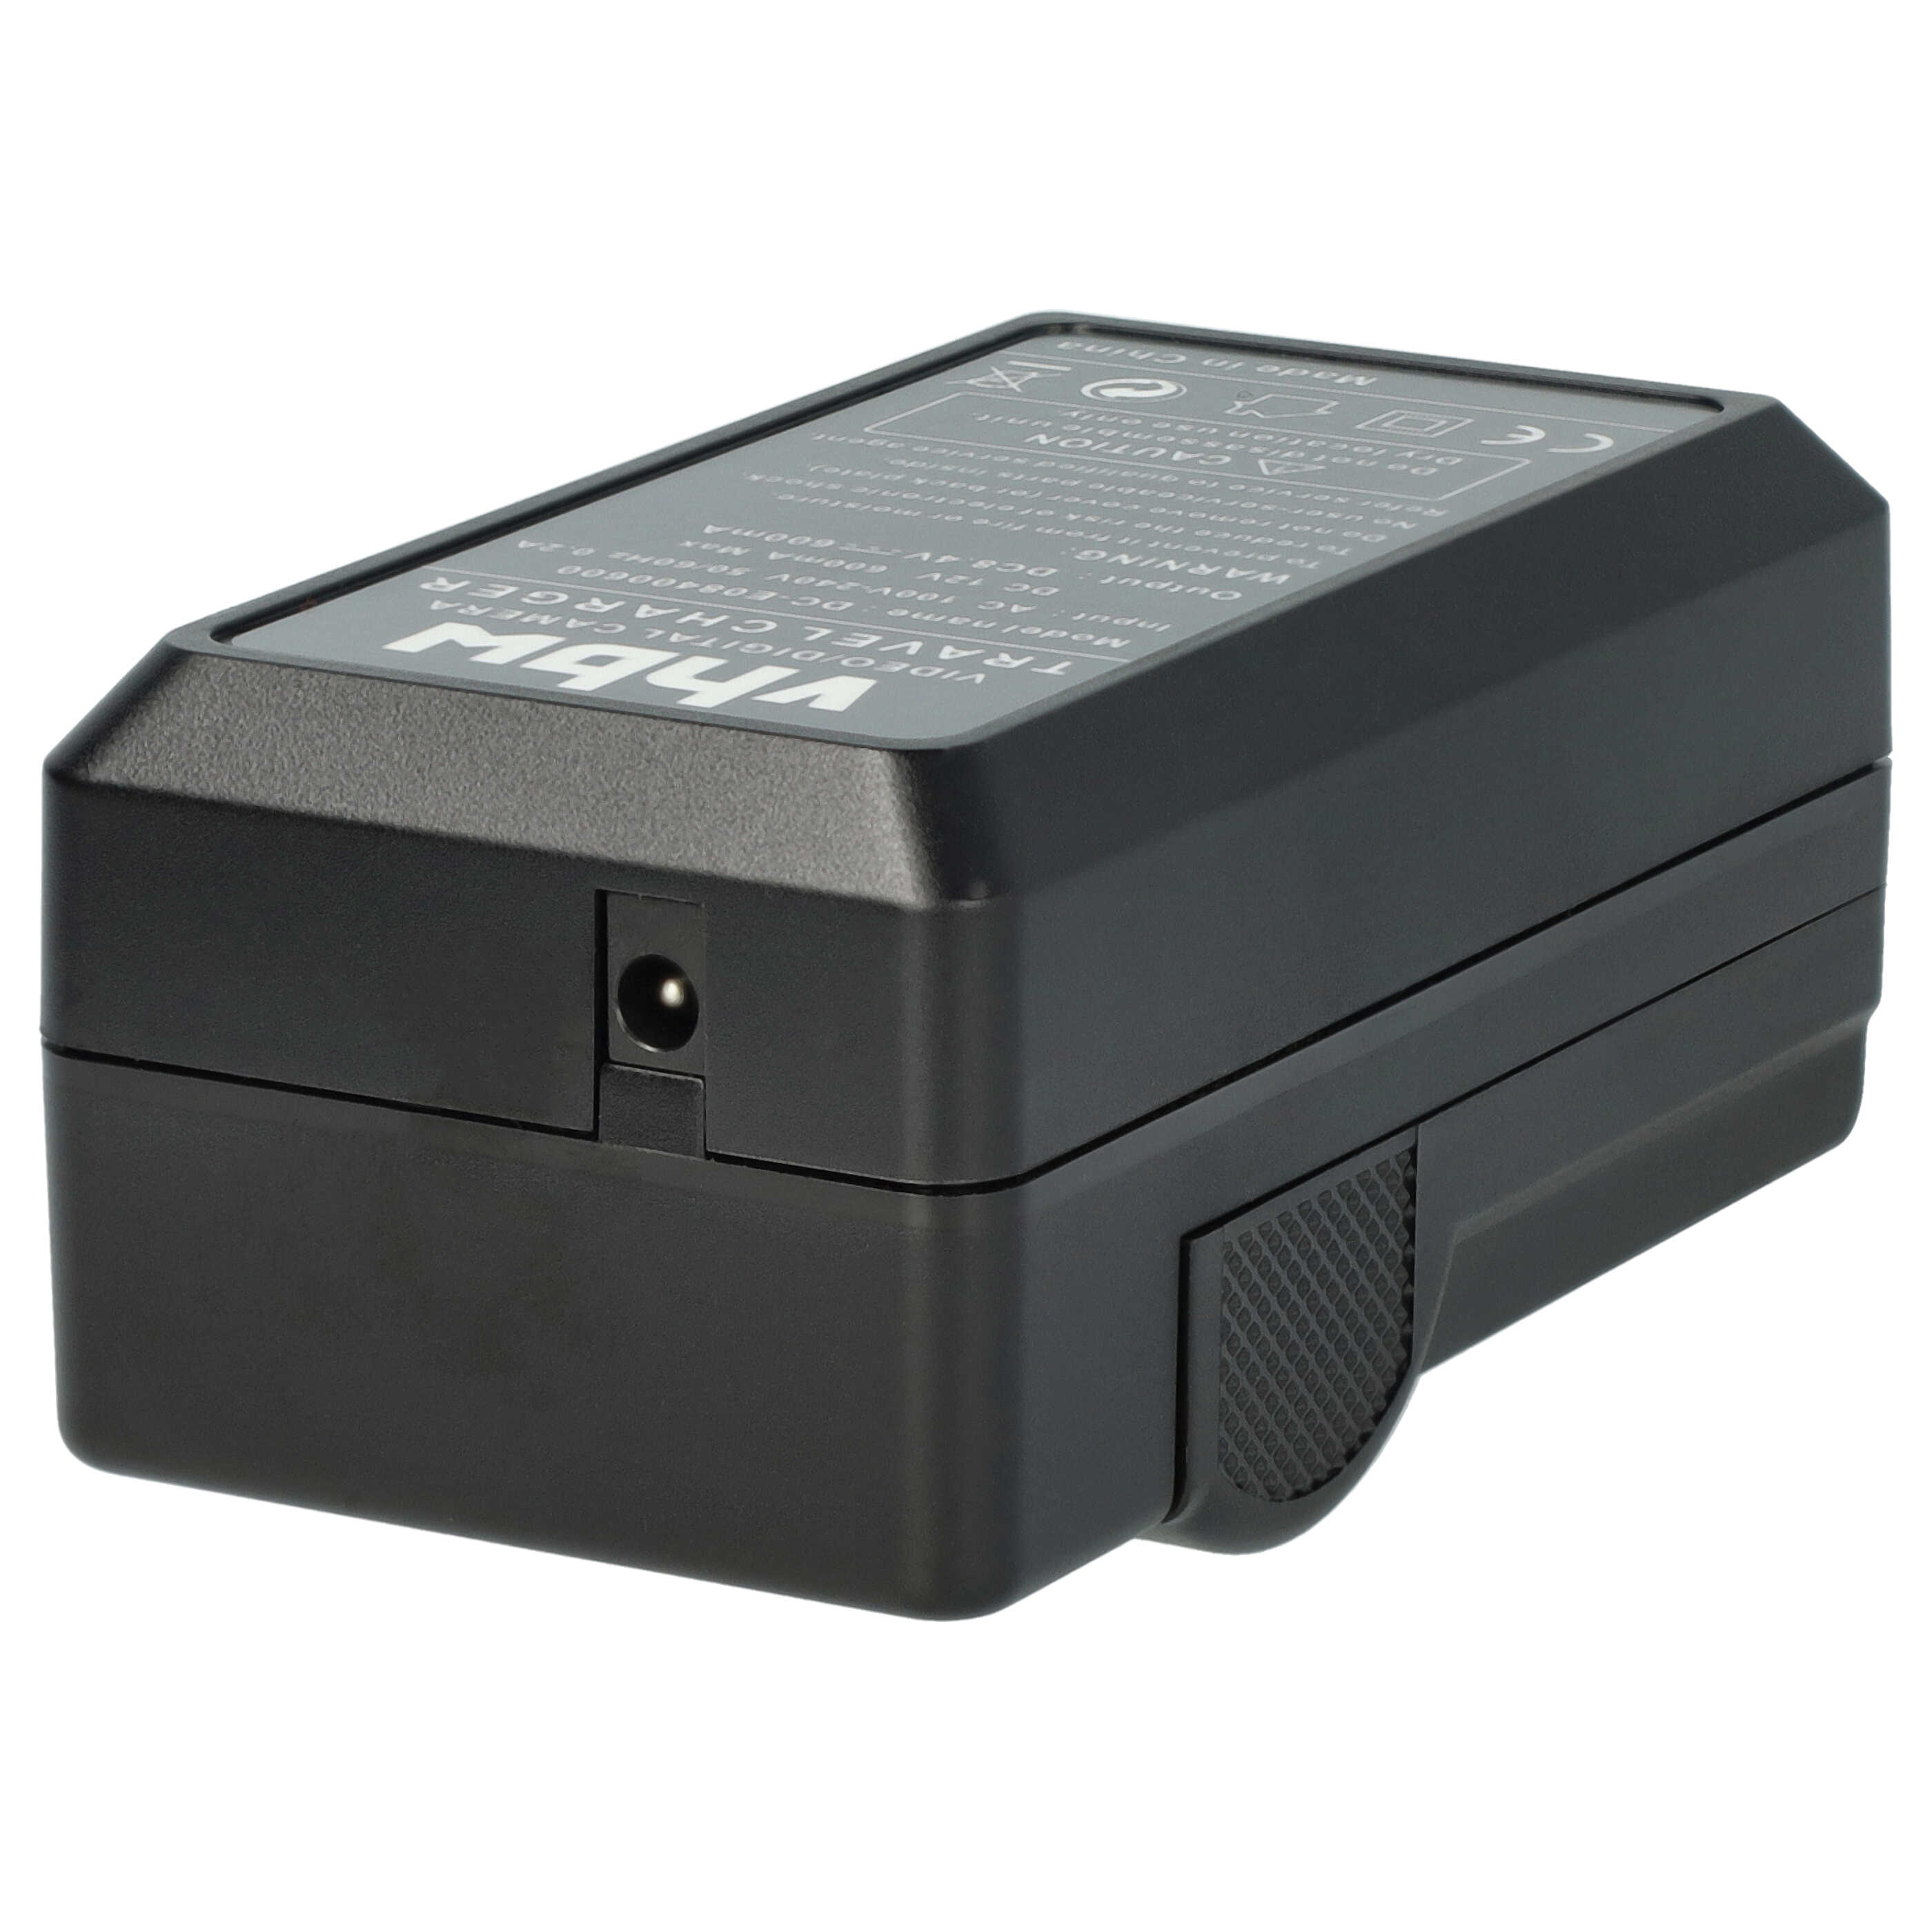 Akku Ladegerät als Ersatz für Olympus BCM-1 passend für Olympus BLM-5 Kamera u.a. - 0,6 A, 8,4 V